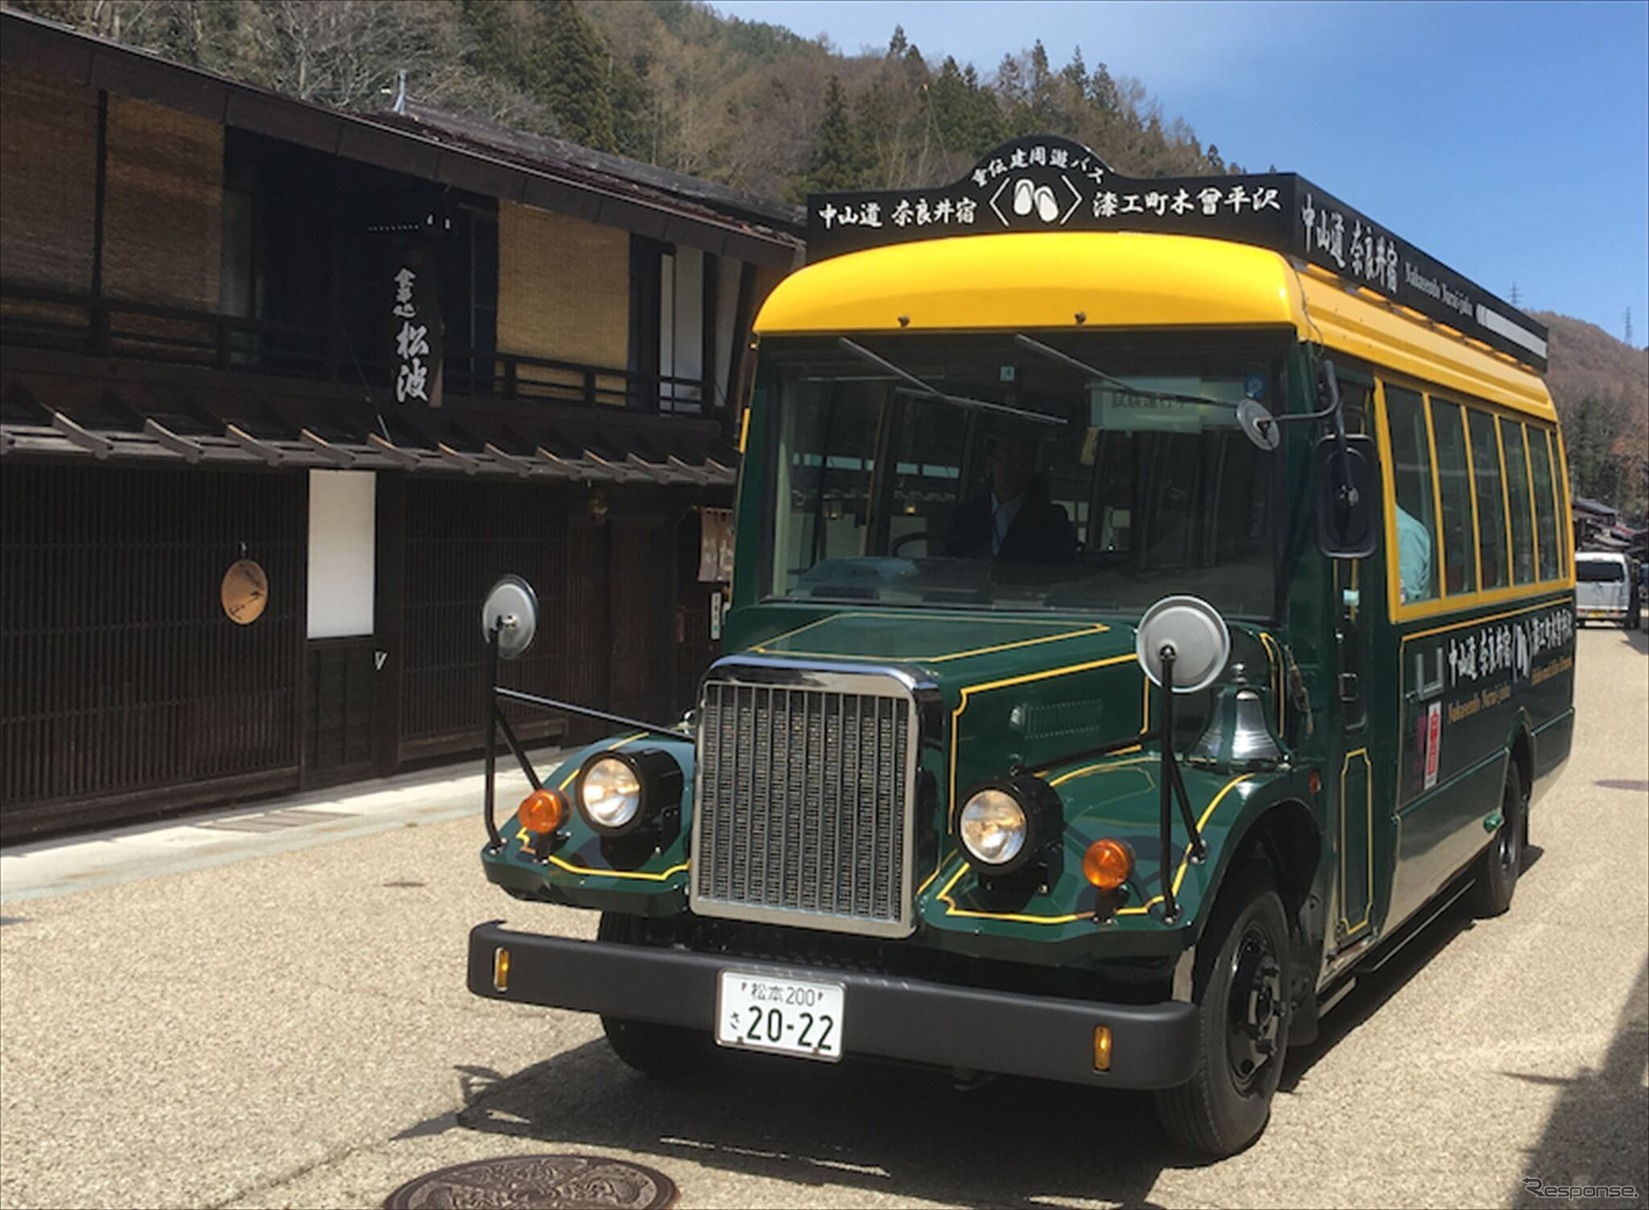 奈良井宿と漆工町木曽平沢を結ぶ無料シャトルバス『重伝建バス』